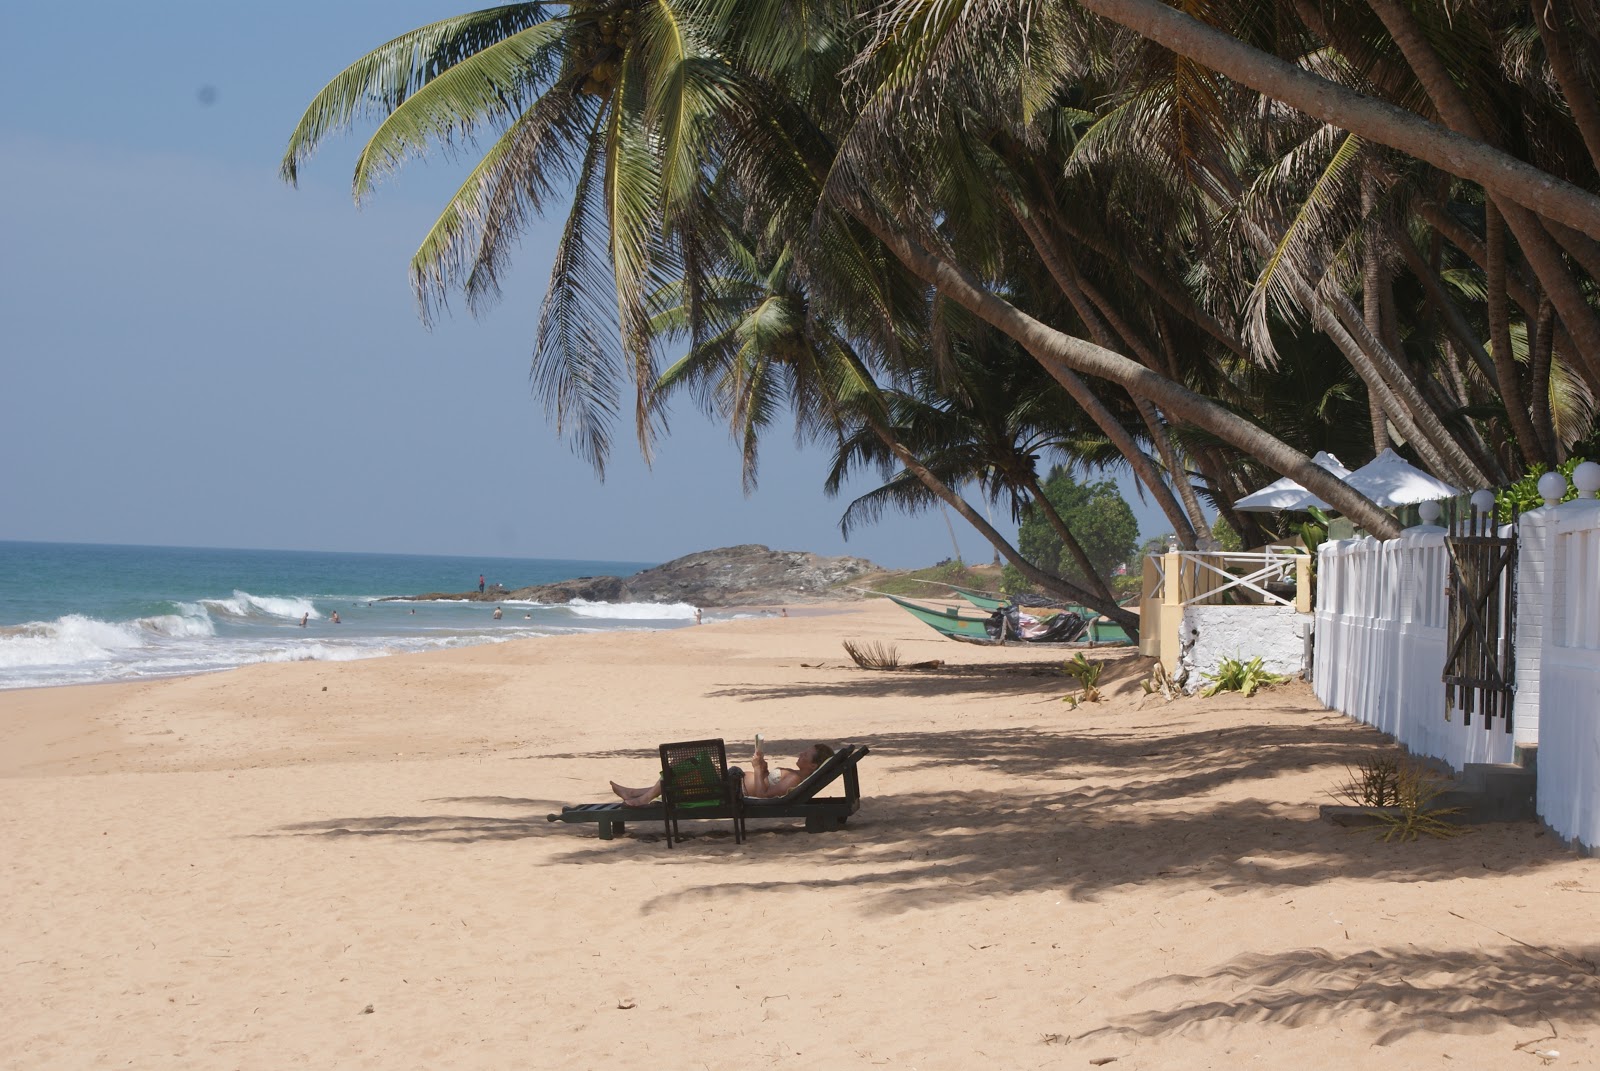 Foto de Ramon Beach - lugar popular entre los conocedores del relax